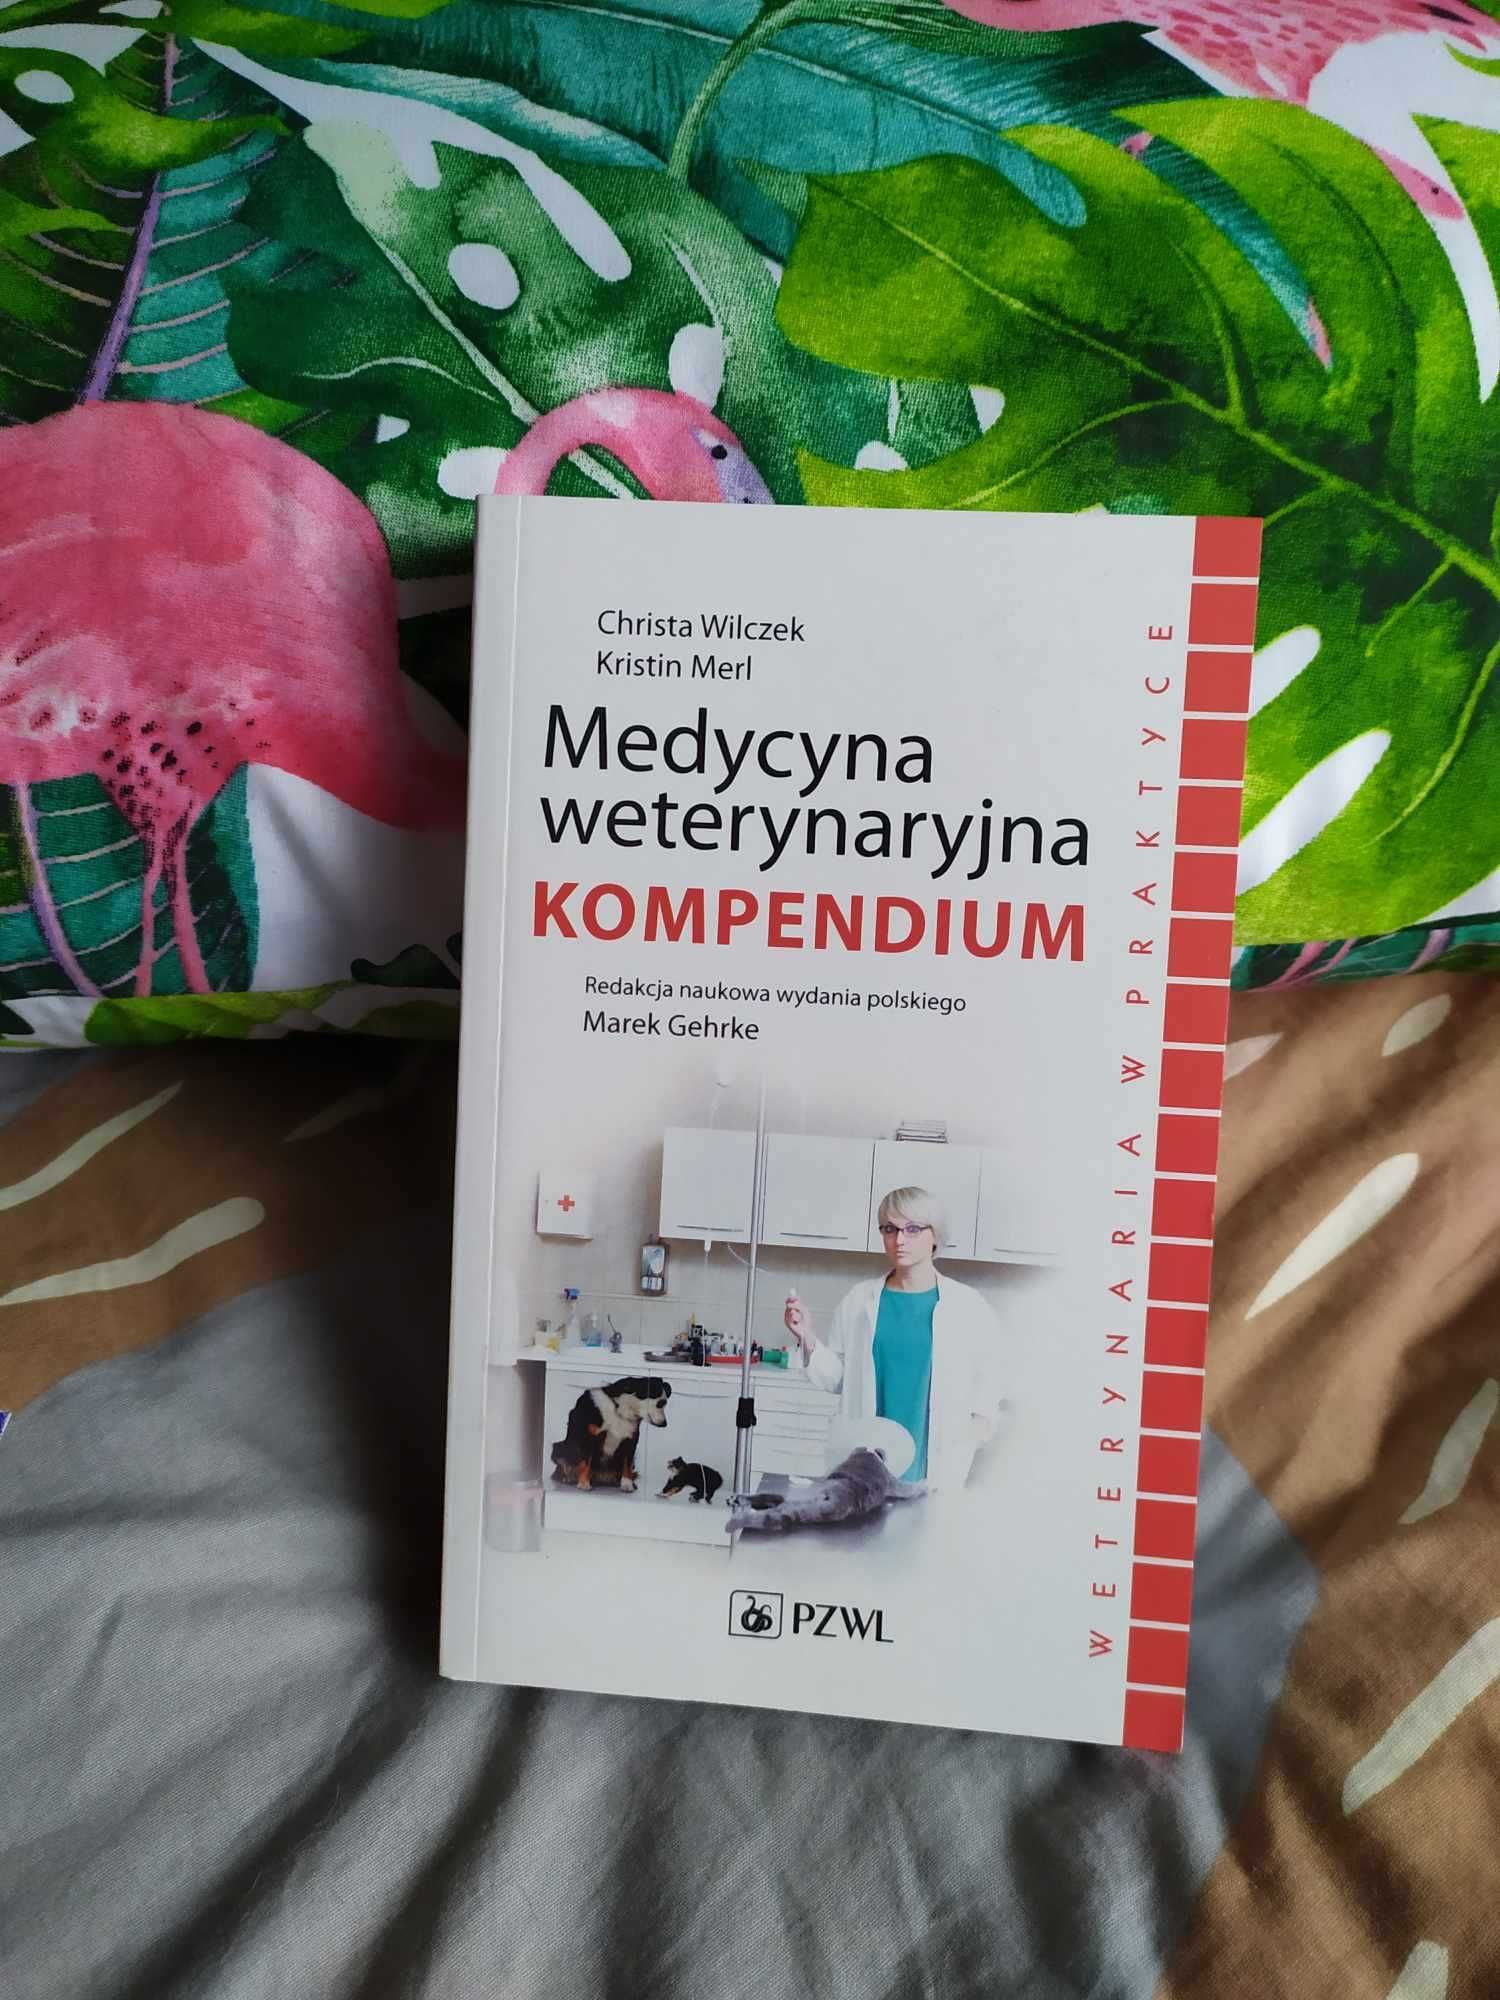 Medycyna weterynaryjna Kompendium Christa Wilczek, Kristin Merl